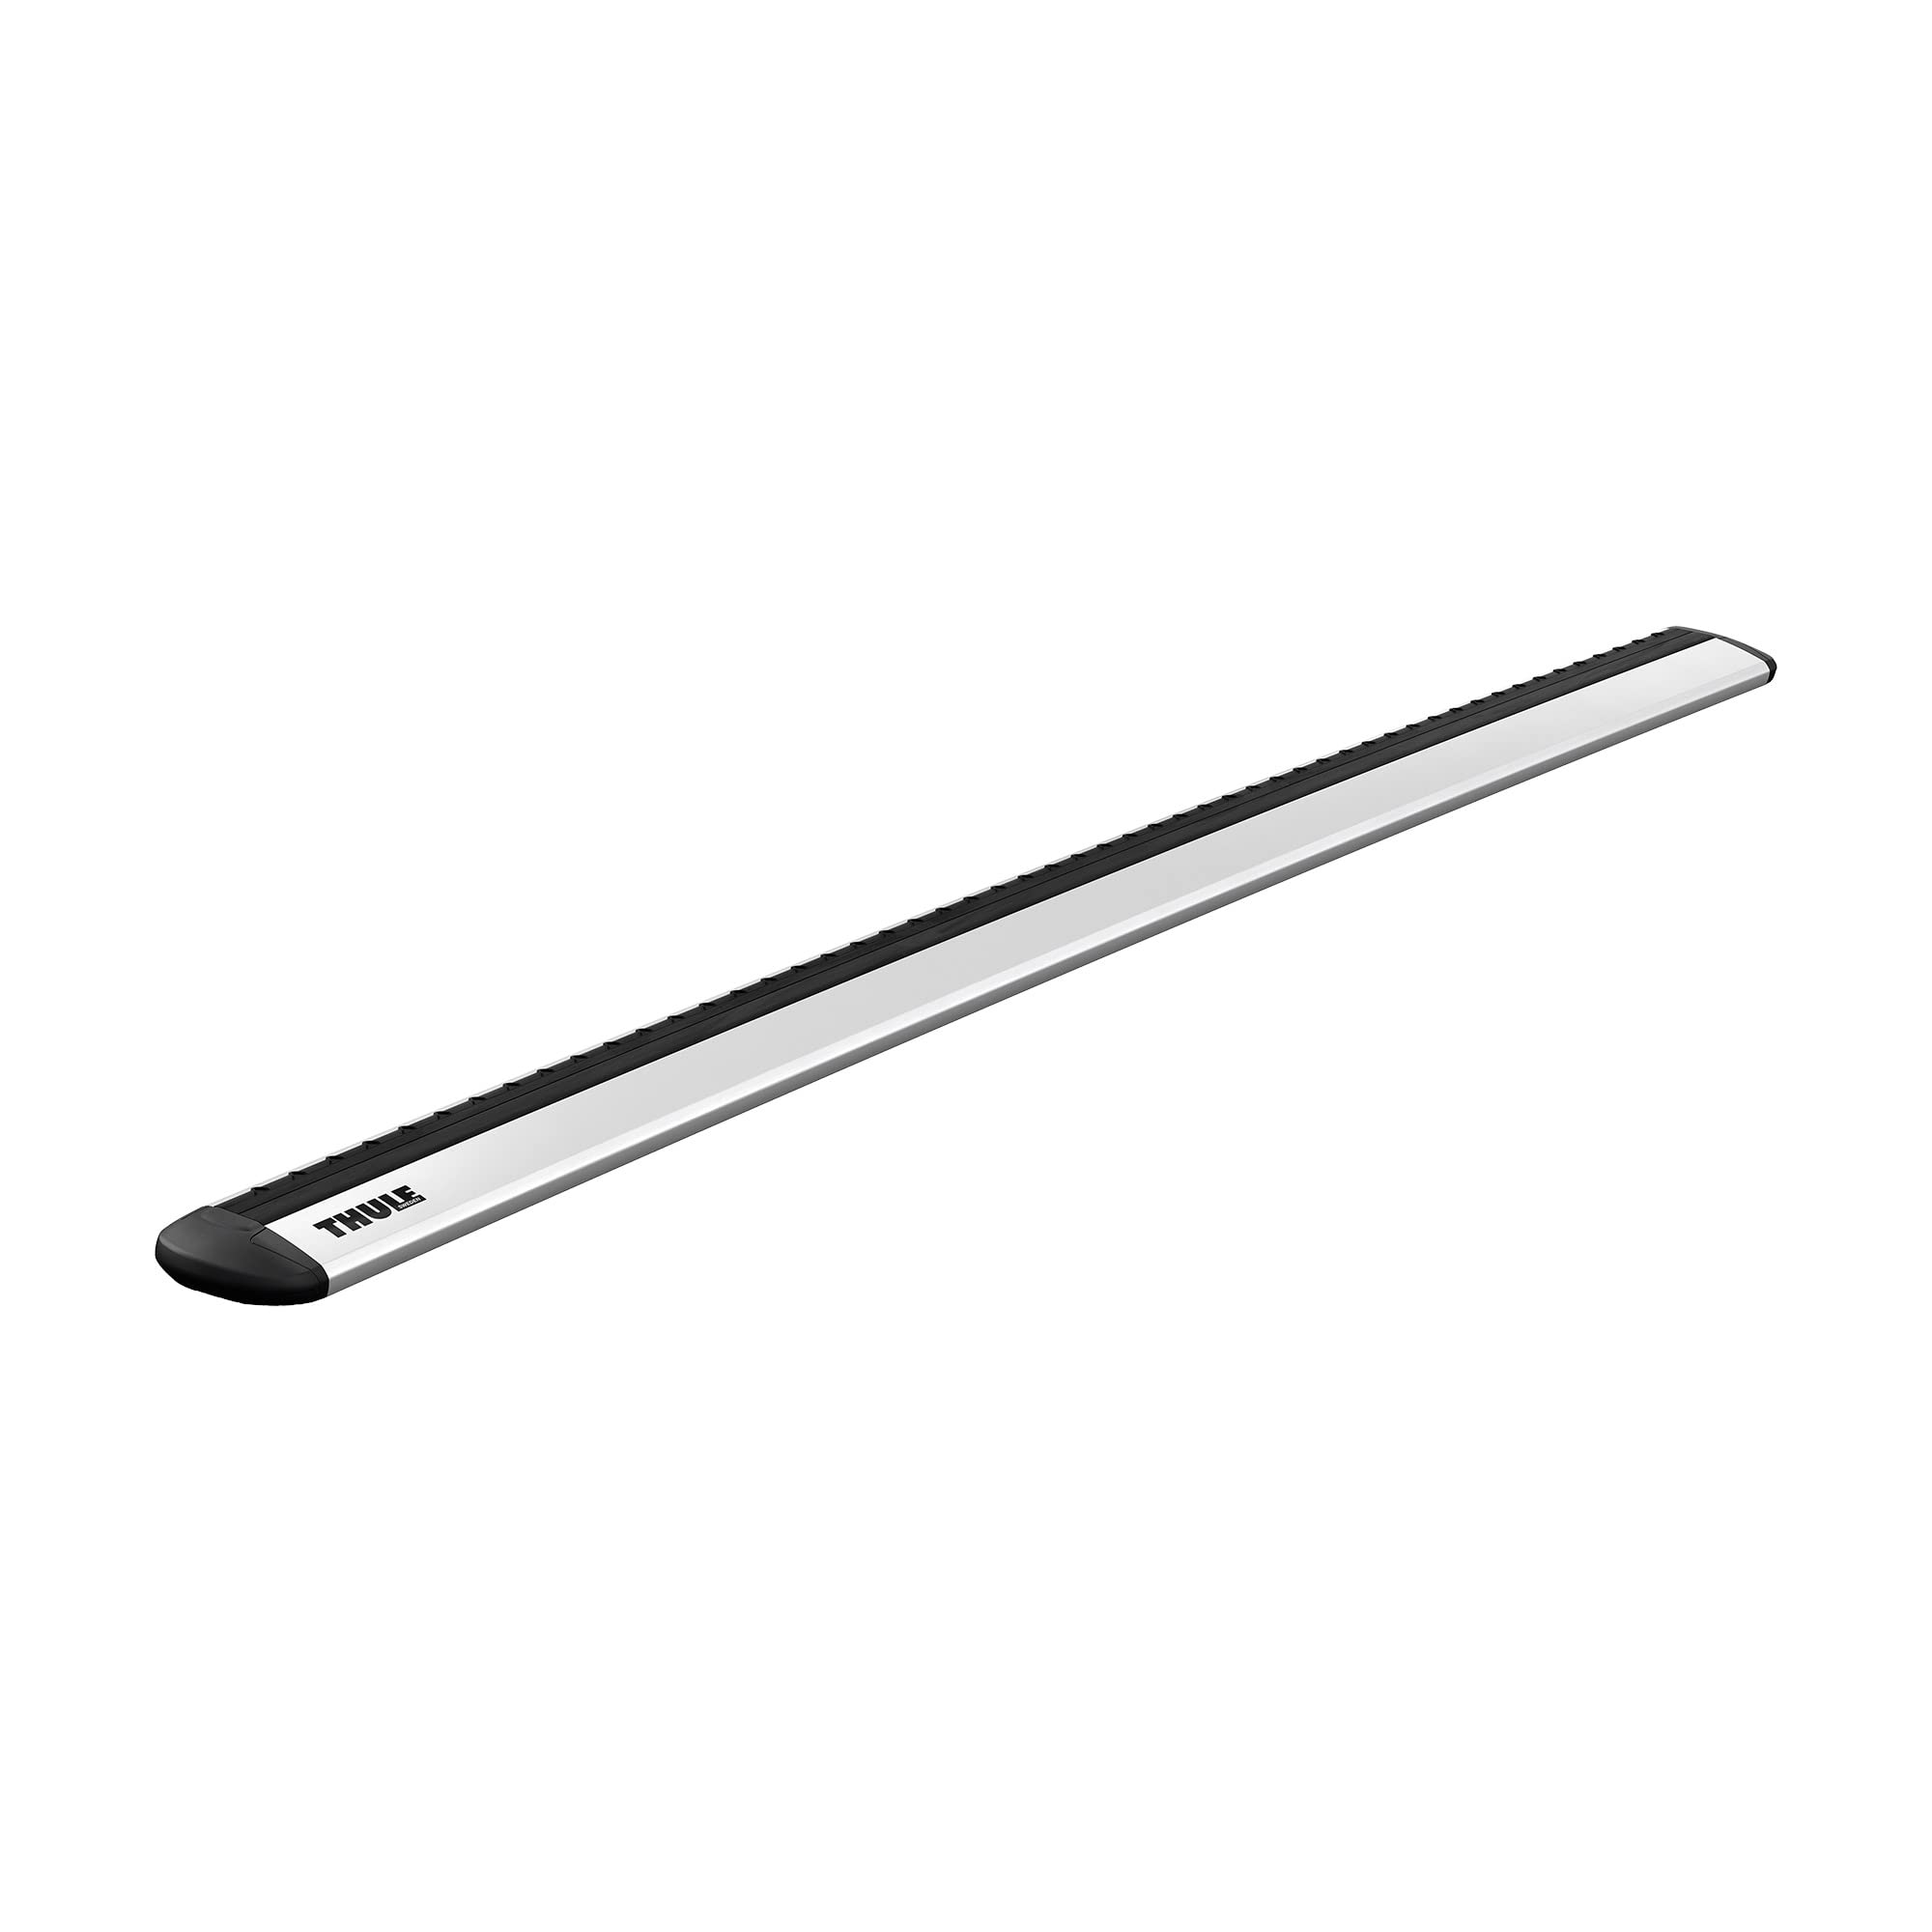 Thule 711100 WingBar Evo 108, Silber Set of 2, Aluminium, 108 cm